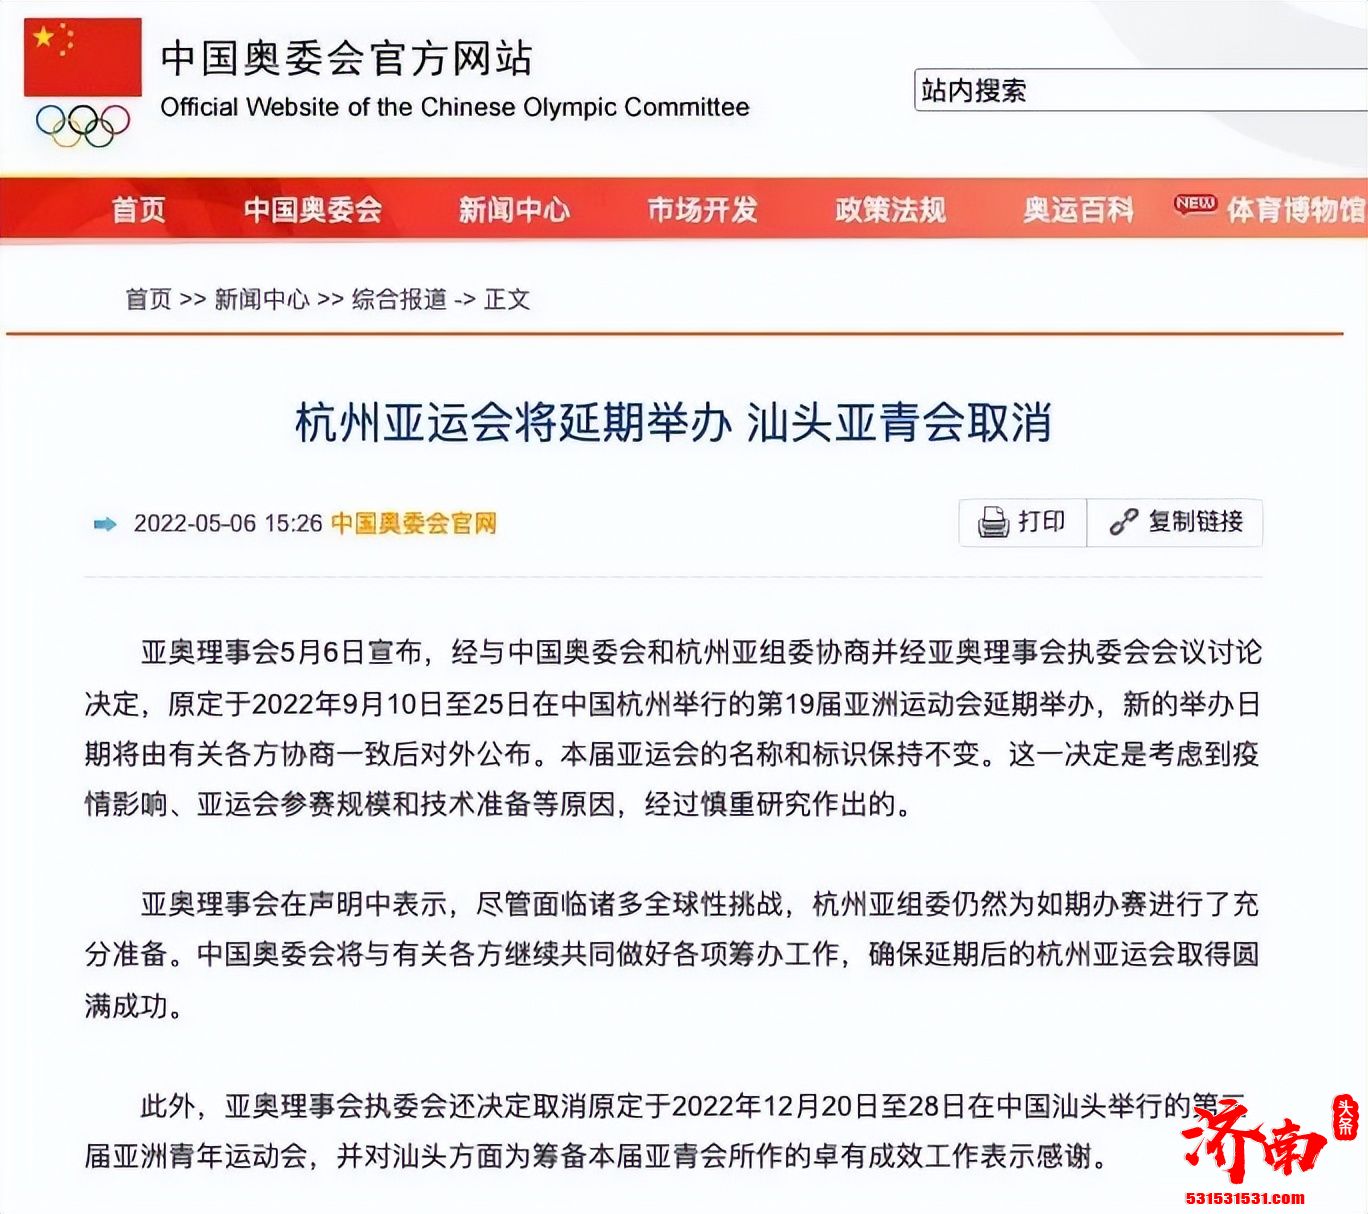 杭州亚运会、汕头亚青会取消、成都大运会延期举办